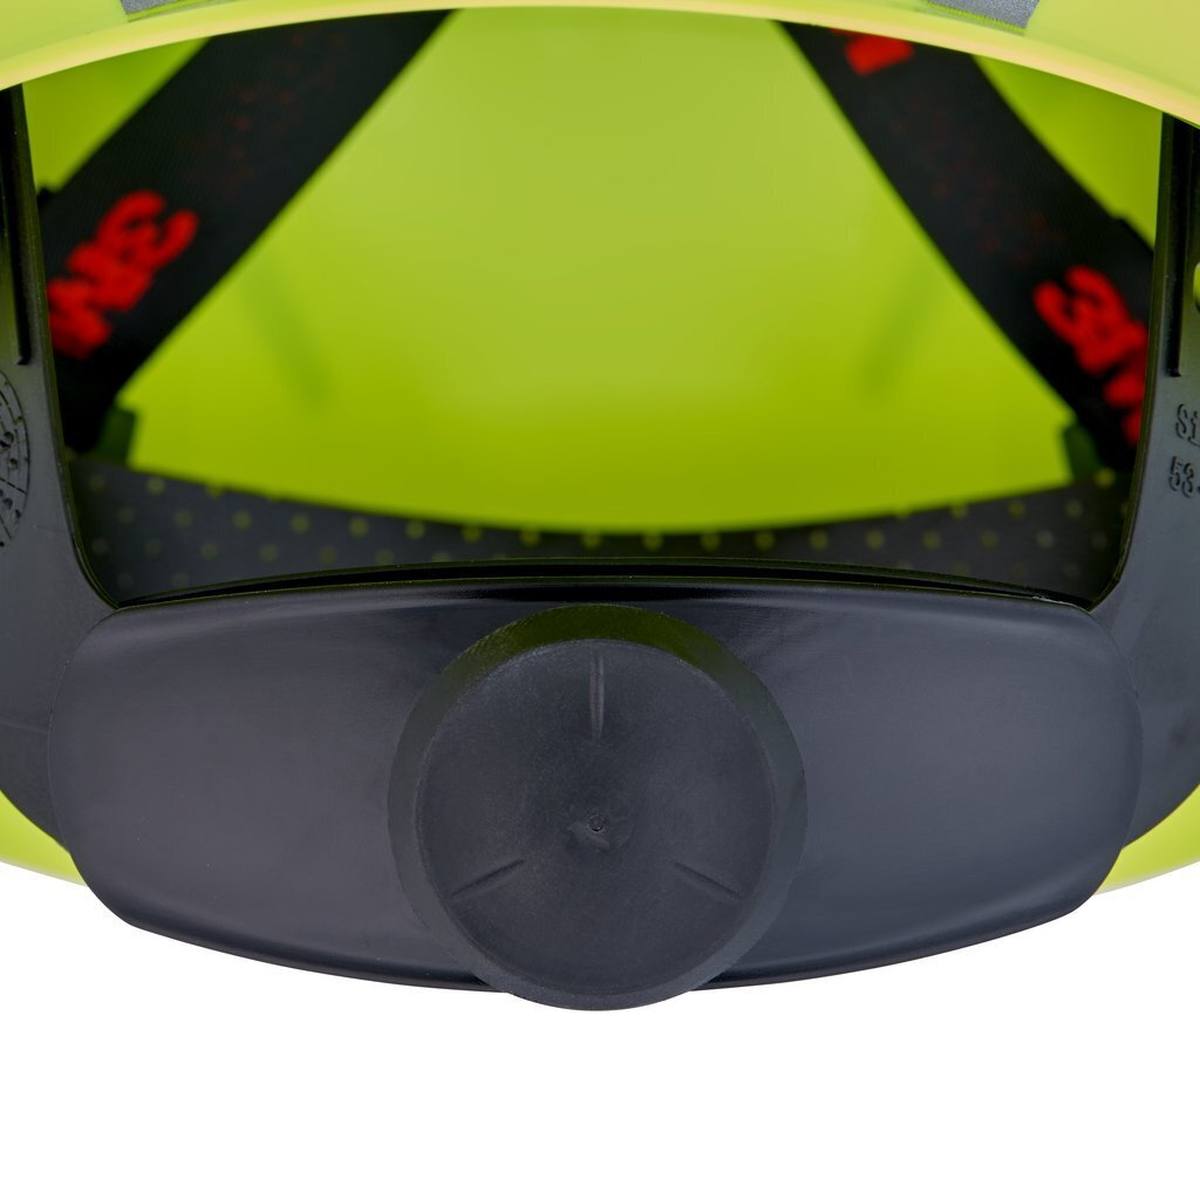 elmetto di sicurezza 3M G3000 con indicatore UV, verde neon, ABS, chiusura a cricchetto ventilata, fascia antisudore in plastica, adesivo riflettente